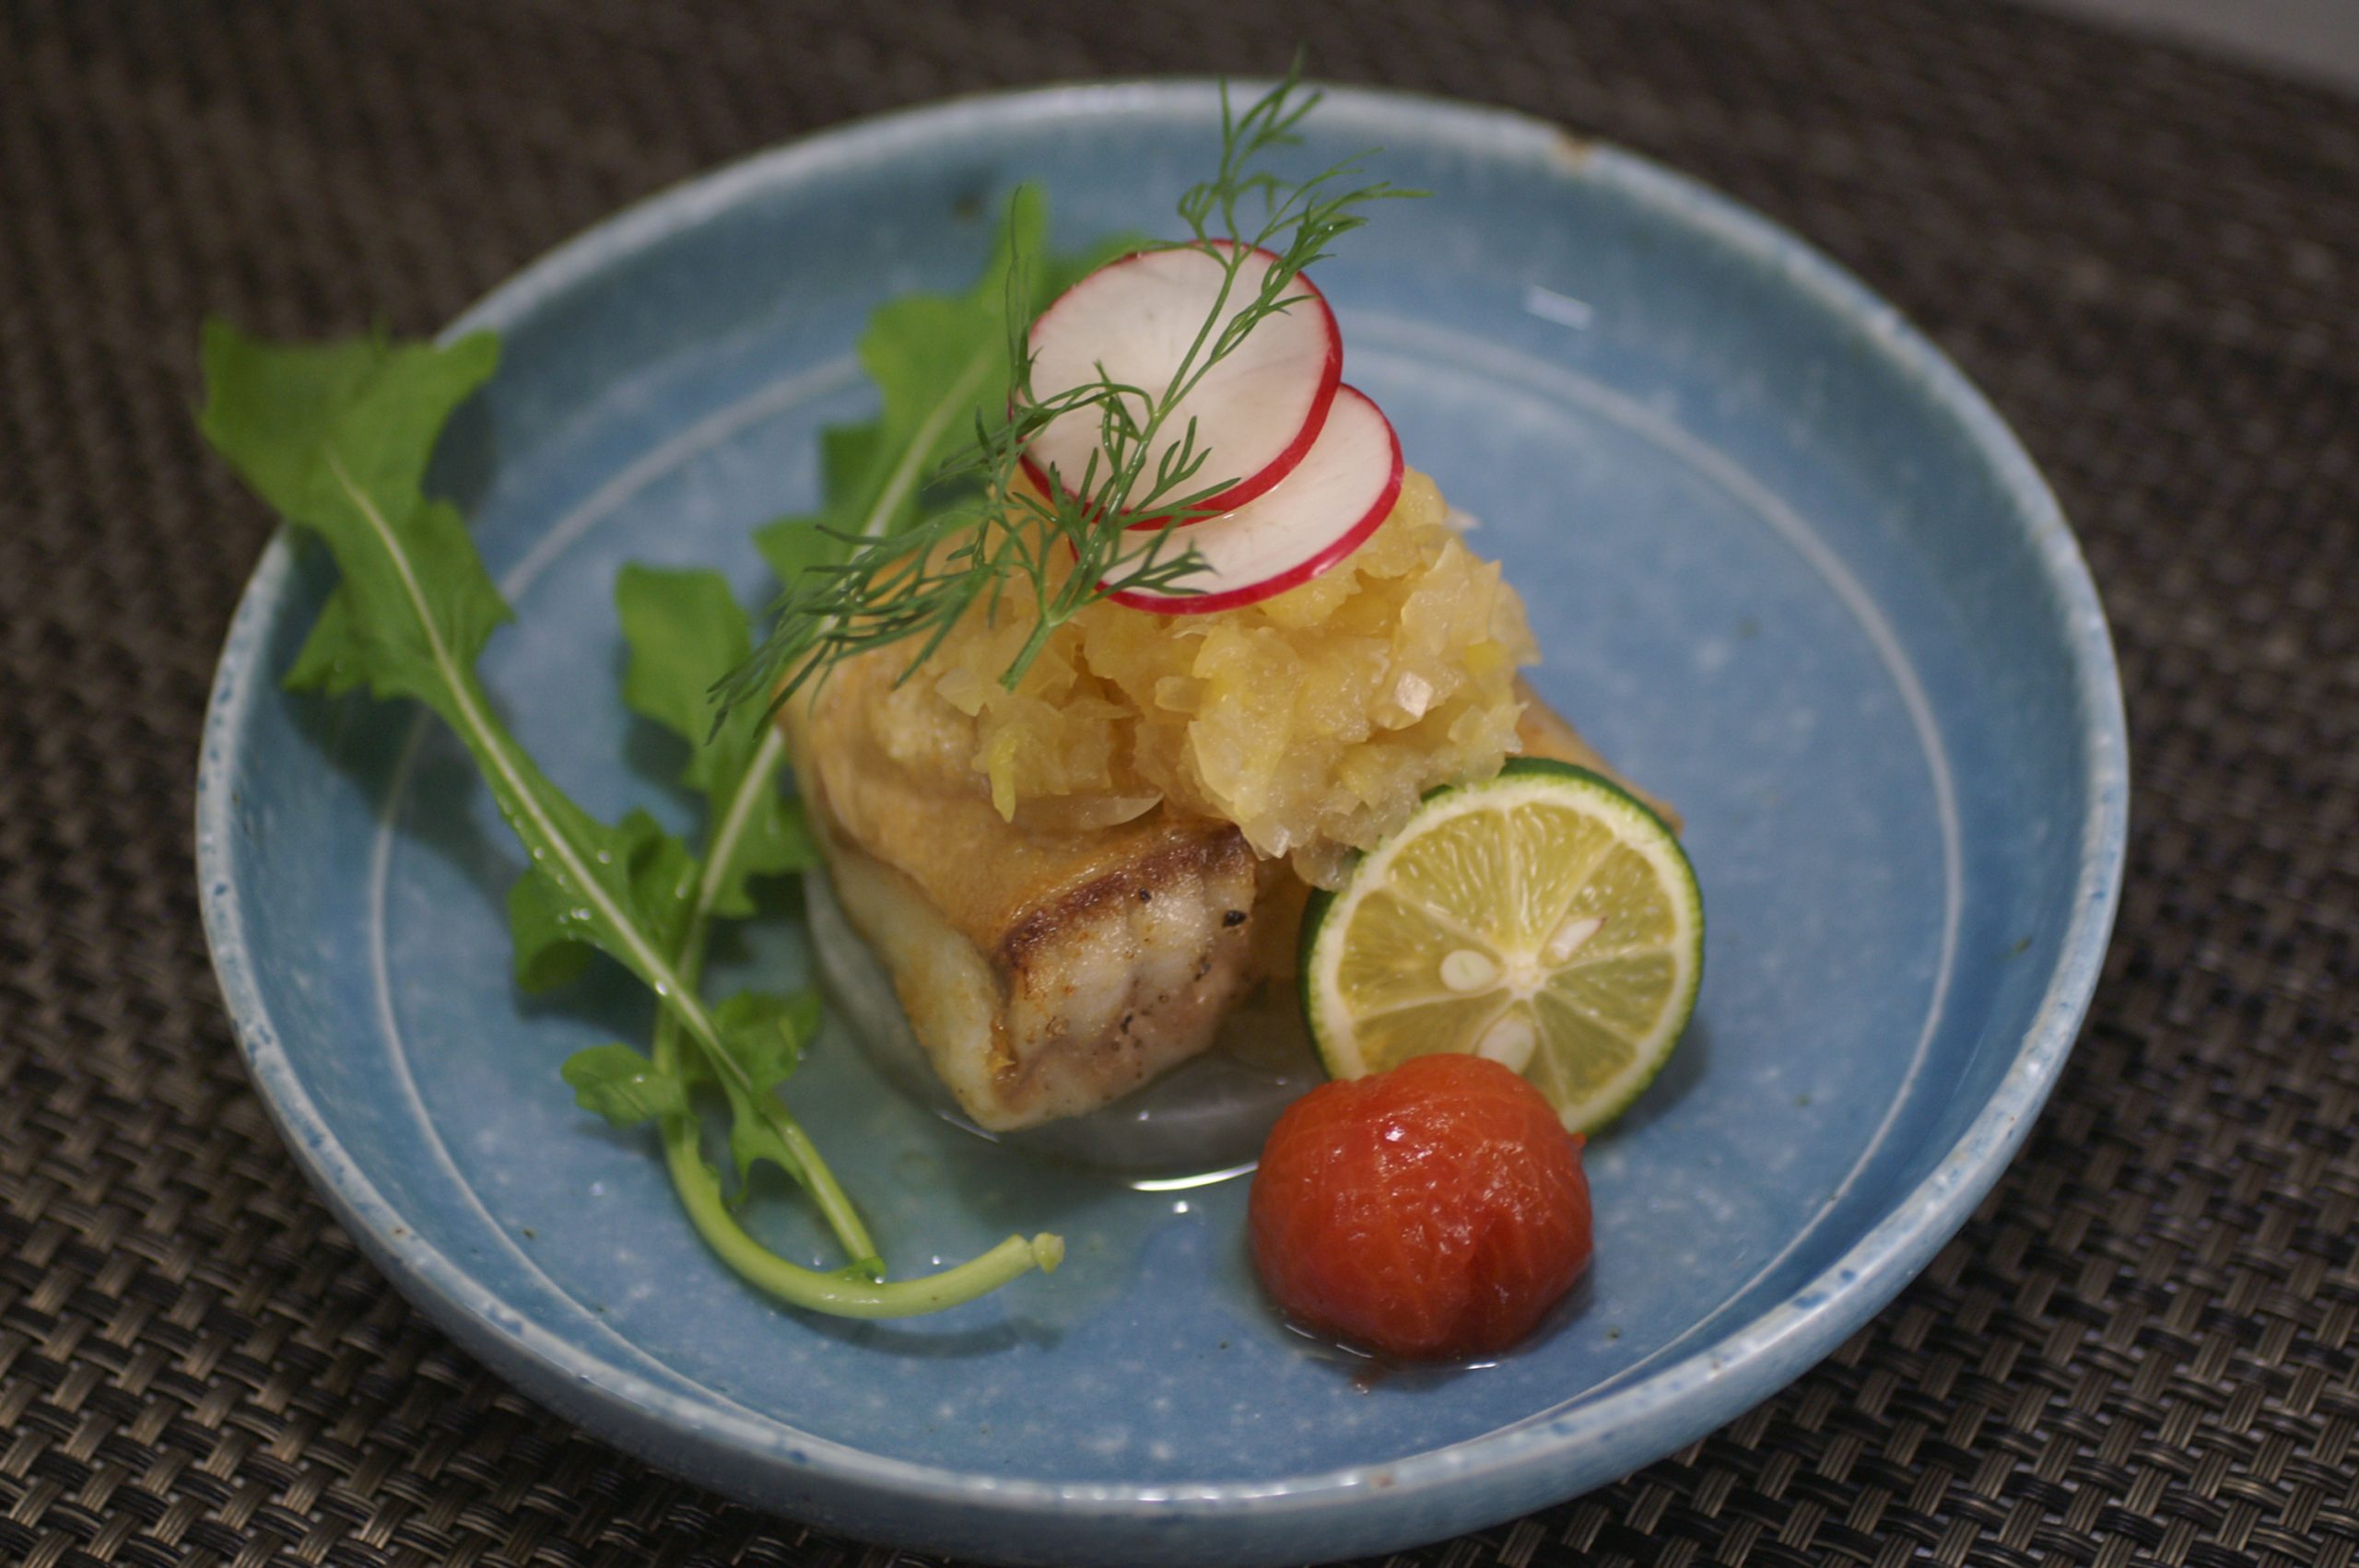 マハタの油焼き おろし掛け パイナップル風味 海の恵み 食の底力 Japan 公式レシピサイト